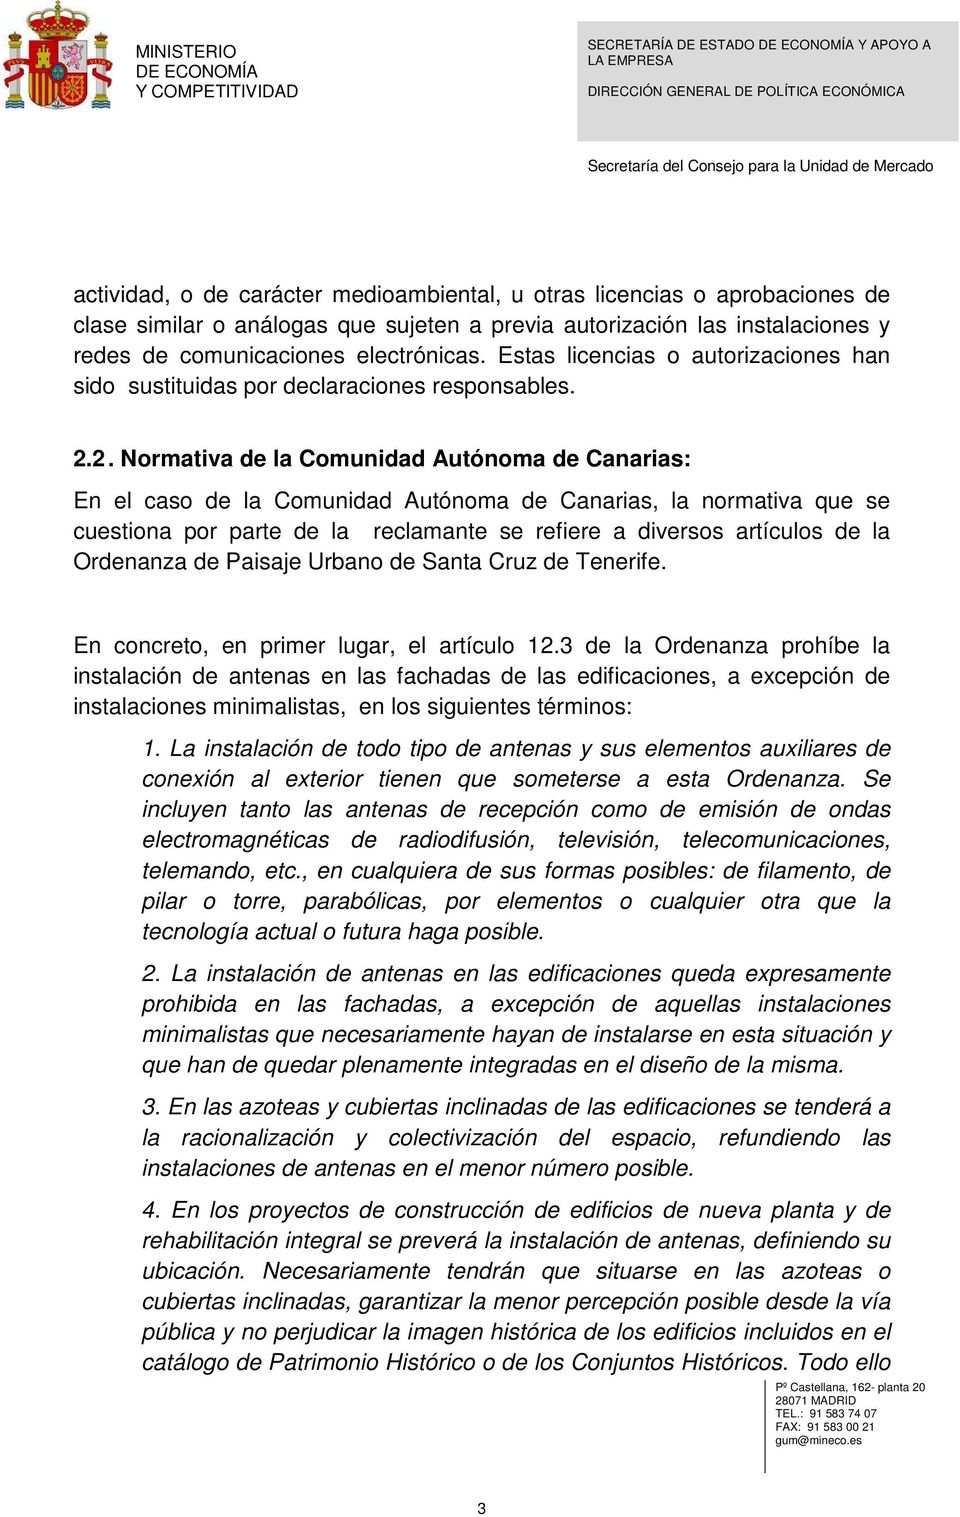 2. Normativa de la Comunidad Autónoma de Canarias: En el caso de la Comunidad Autónoma de Canarias, la normativa que se cuestiona por parte de la reclamante se refiere a diversos artículos de la